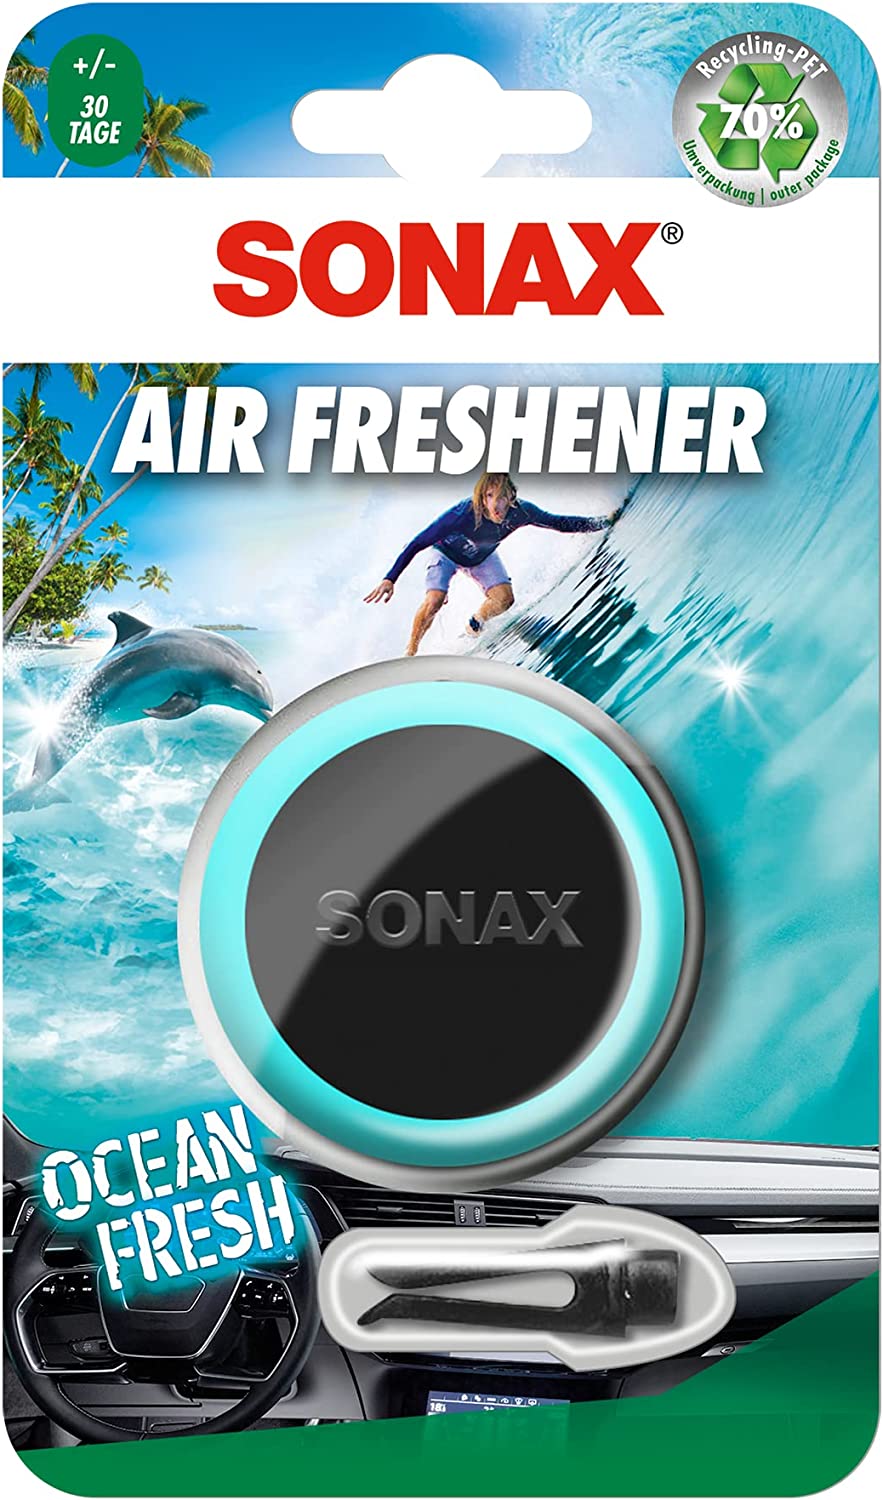 Sonax Air Freshener Ocean Fresh Lufterfrischer Clip